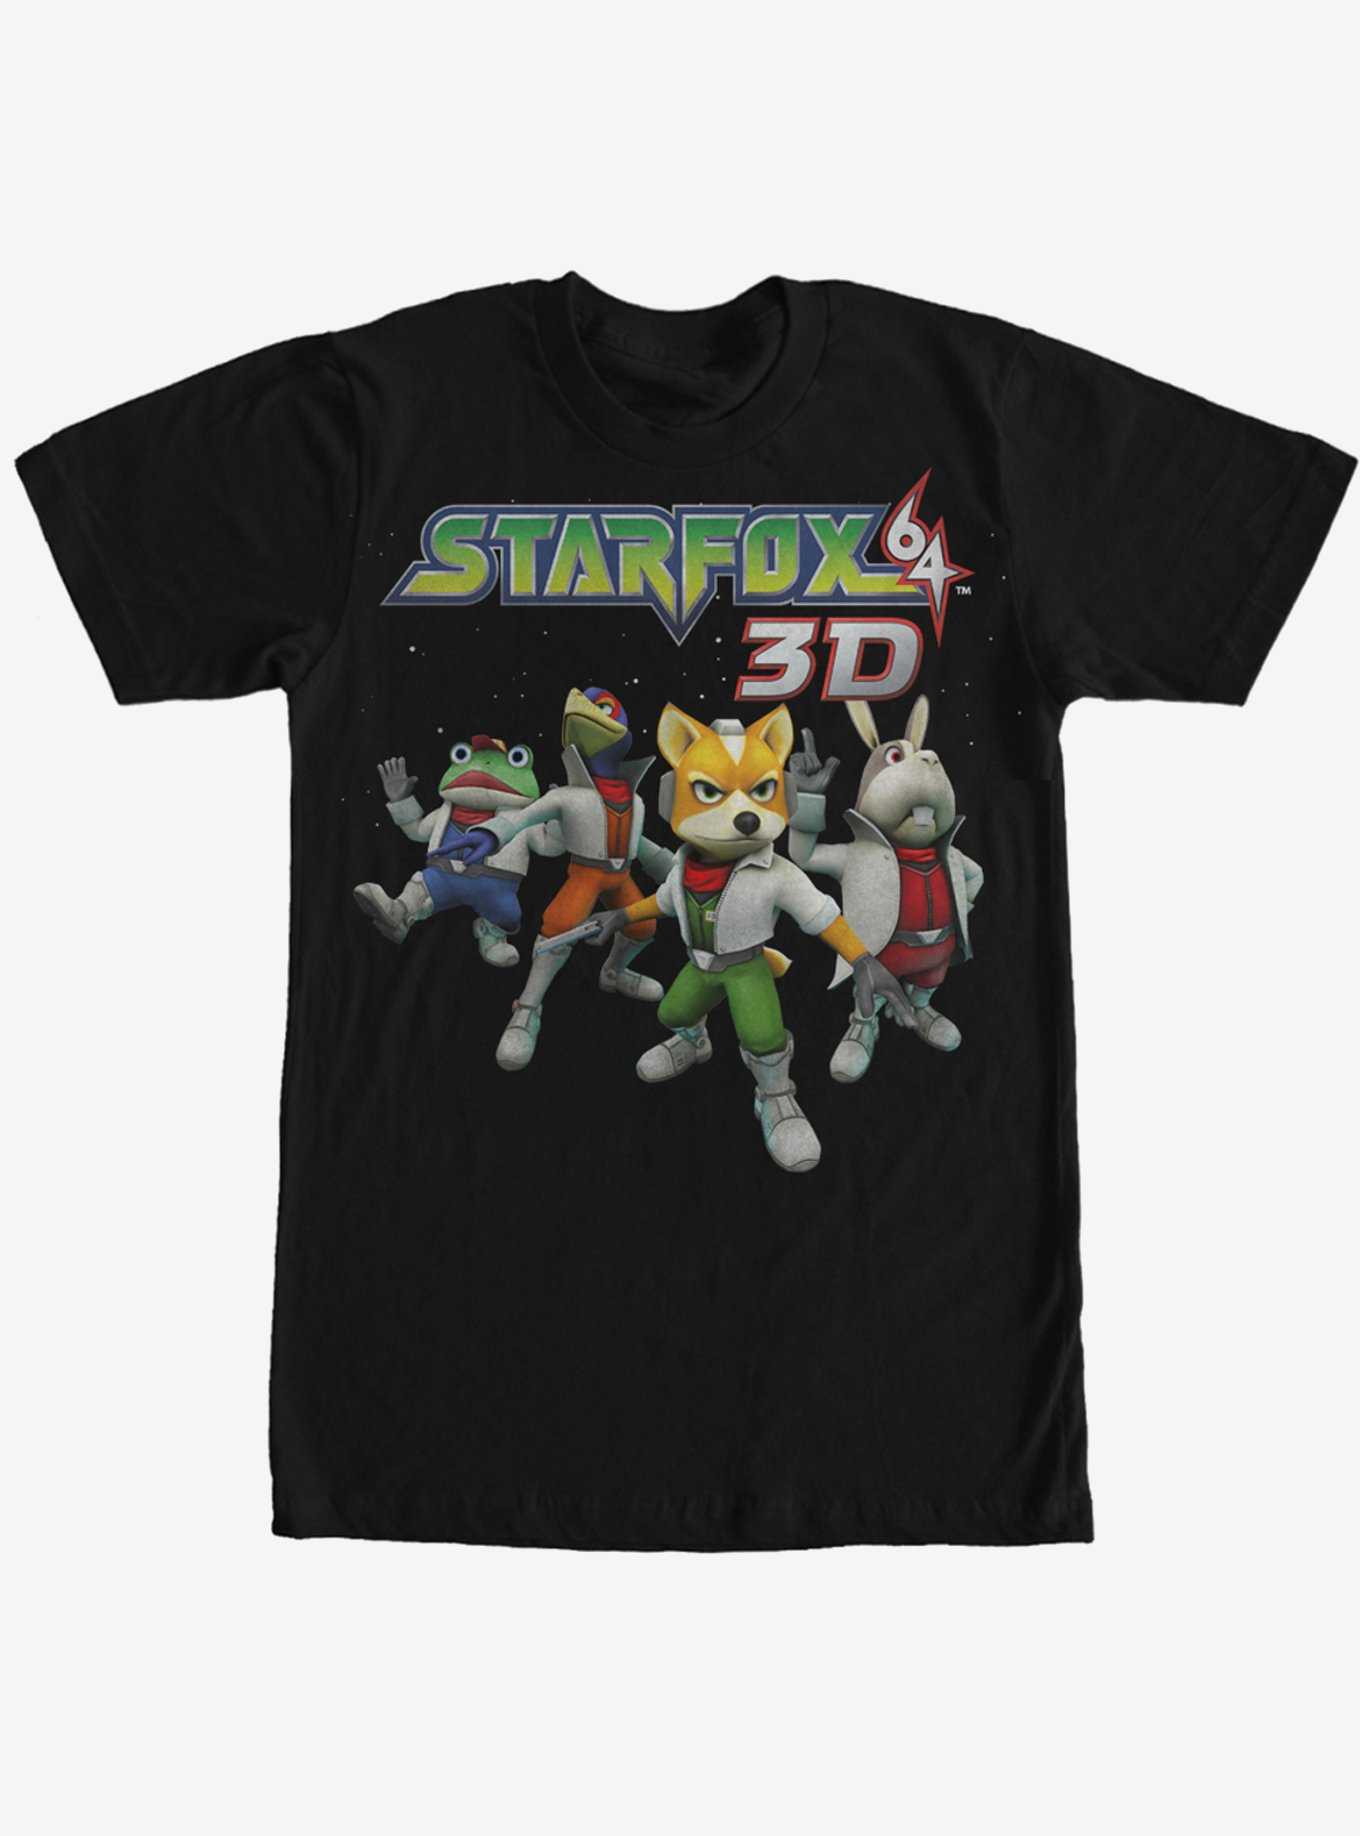 Nintendo Star Fox 64 3D Characters T-Shirt, , hi-res